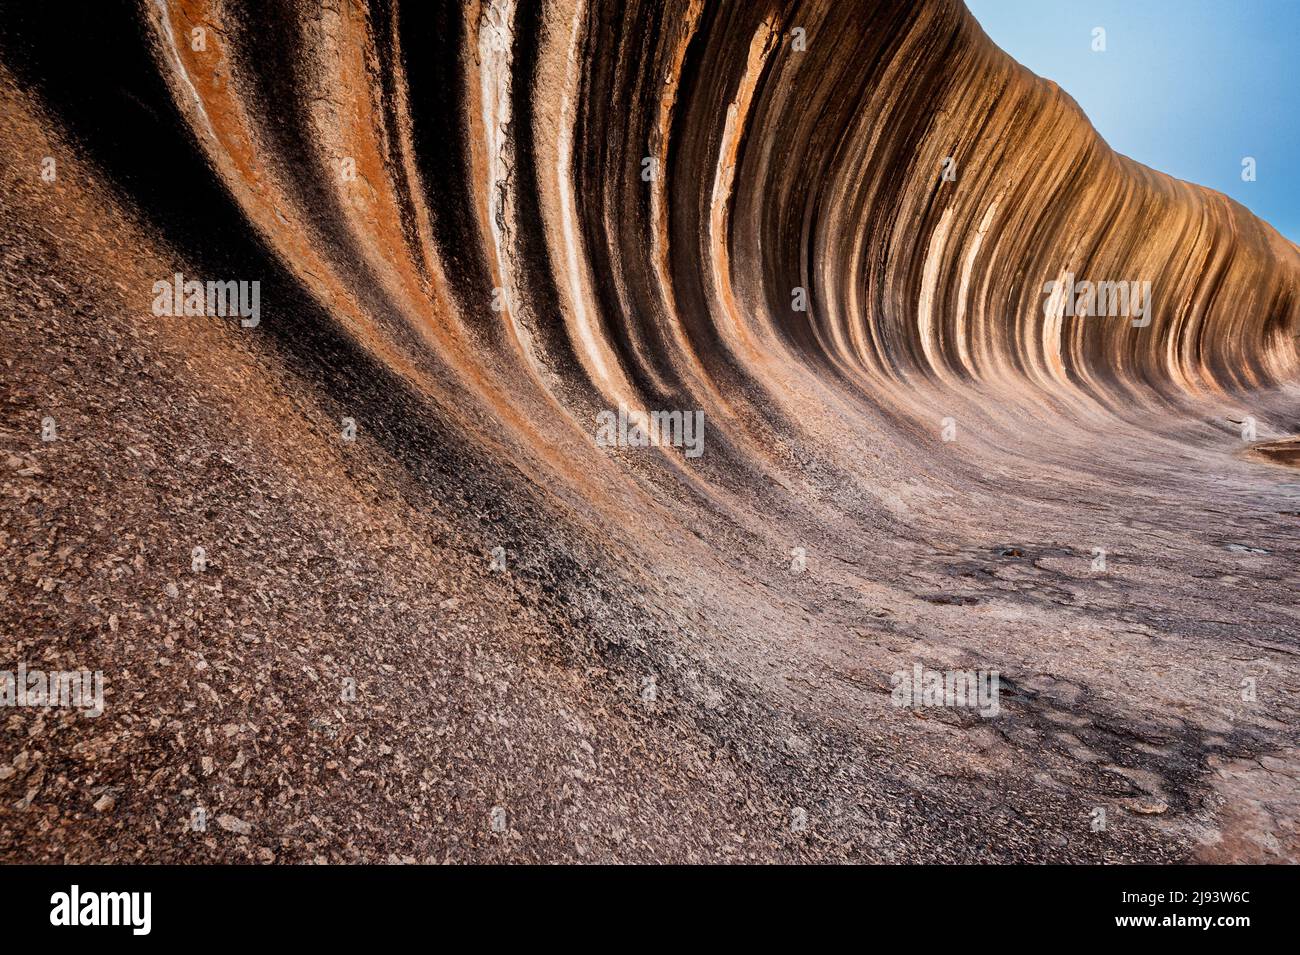 Eccezionale Wave Rock nell'Outback dell'Australia Occidentale. Foto Stock